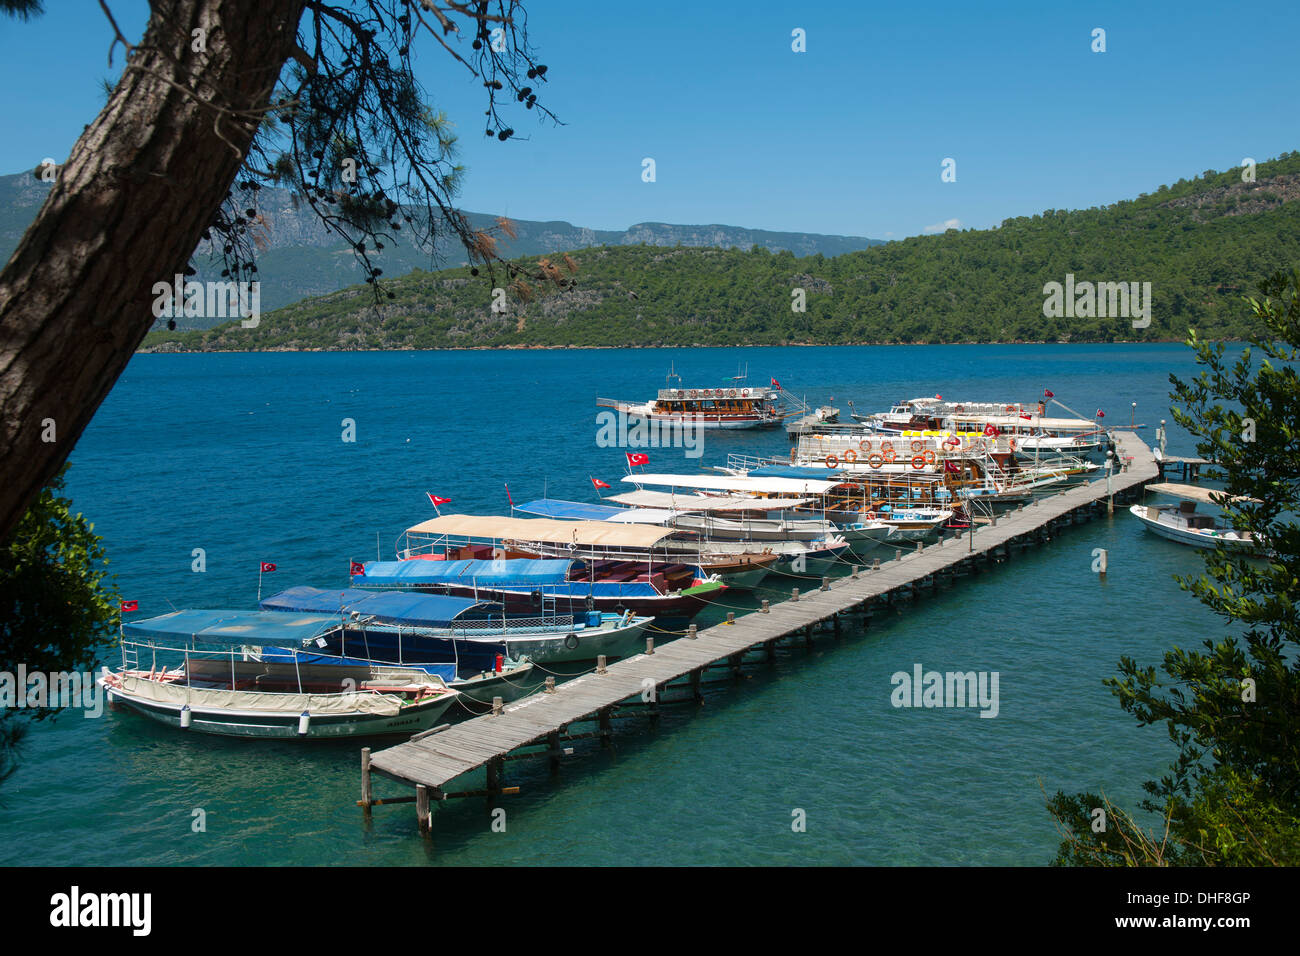 Türkei, Provinz Mugla, Golf von Gökova, Anlegestelle der Boote zur Kleopatra-Insel Stock Photo